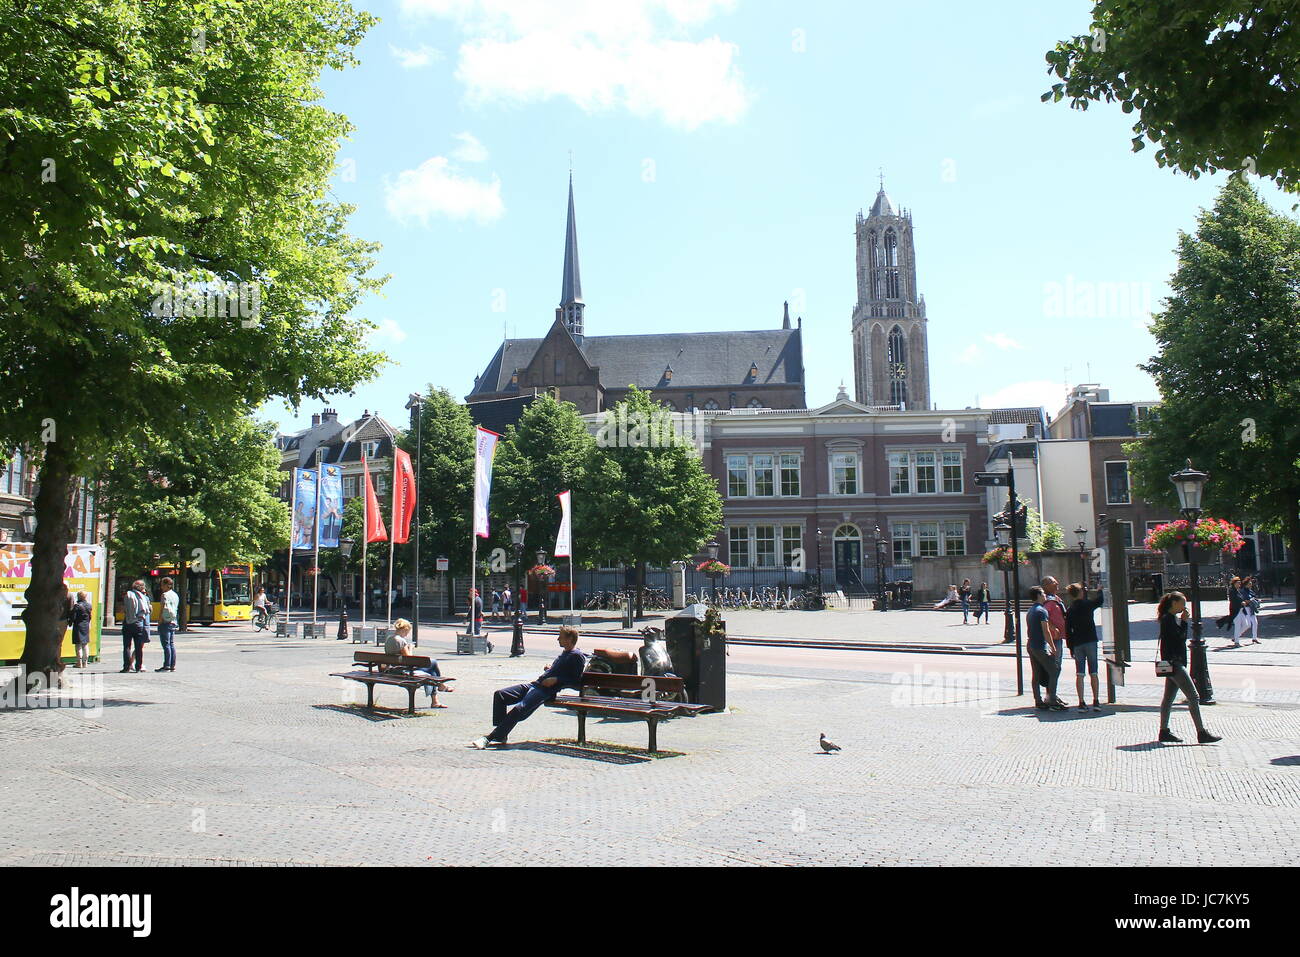 Mittelalterliche Janskerkhof Platz im zentralen Utrecht, die Niederlande, mit Blick auf Dom & Turm der Kirche. Stockfoto